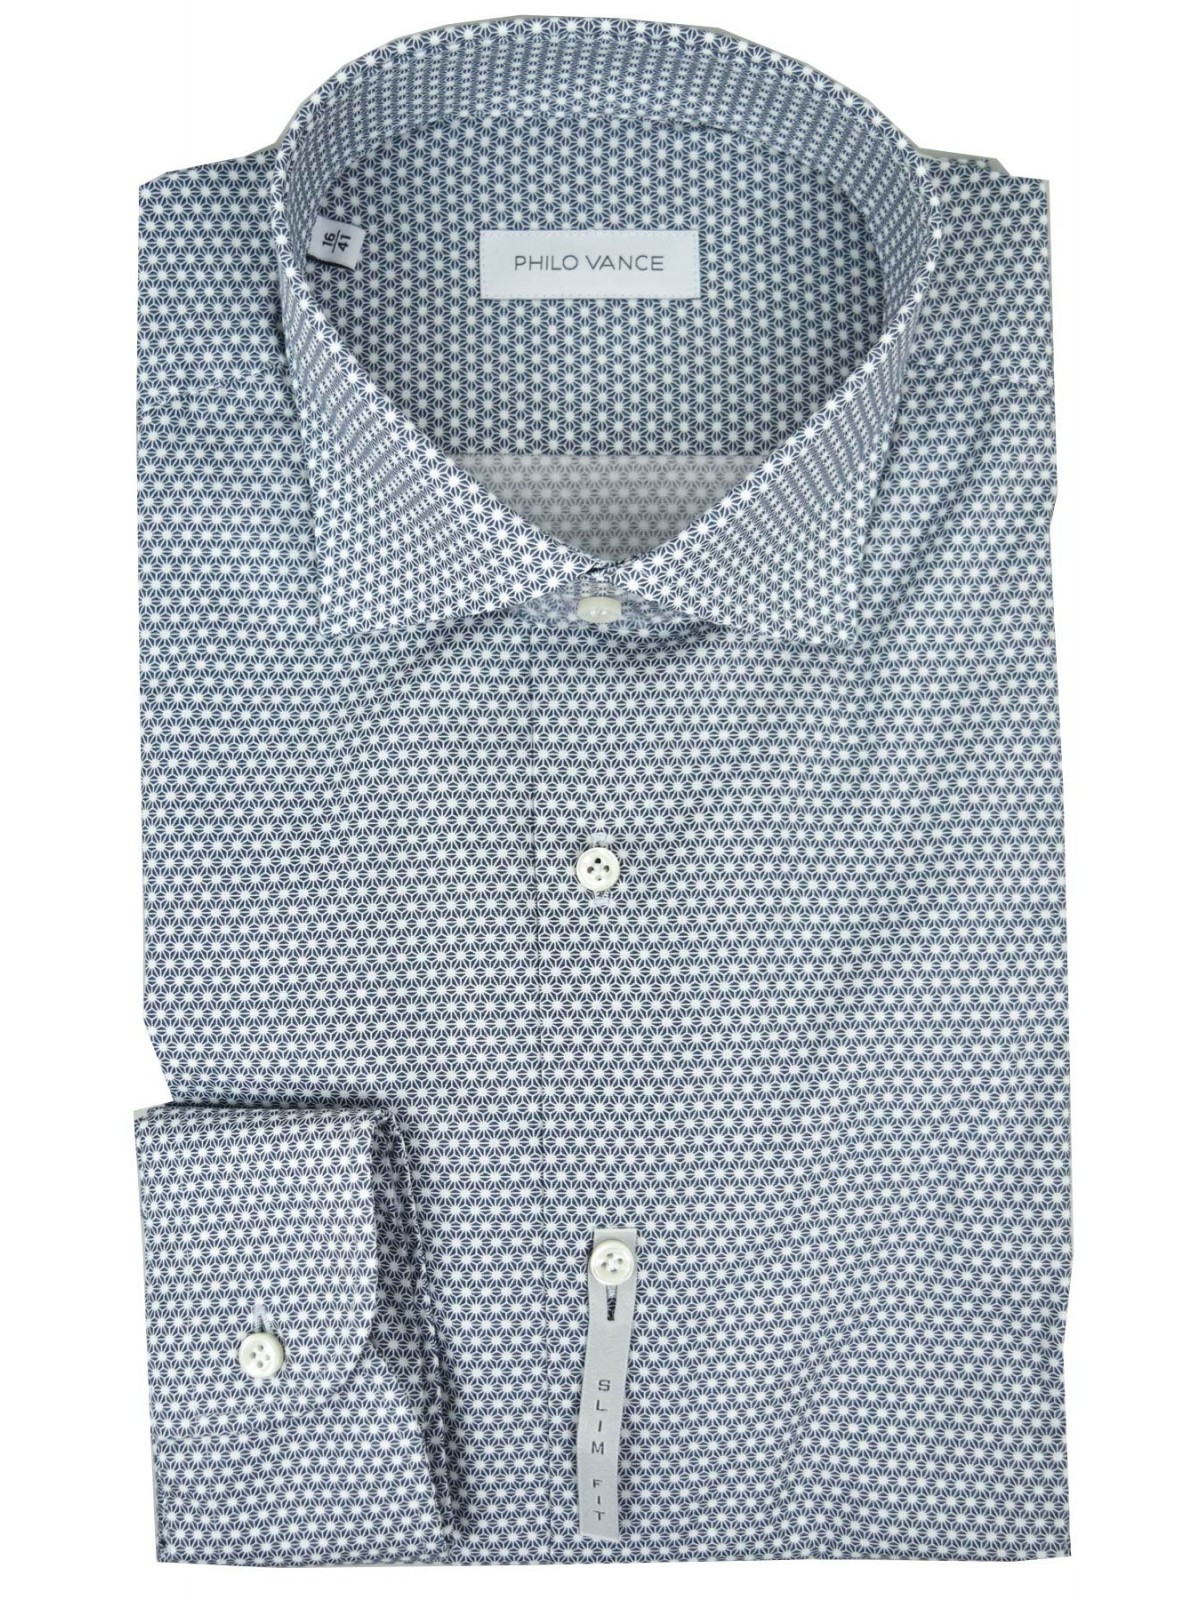 Slim Fit Herrenhemd Kleines Muster Blau auf Weiß Kleiner Spreizkragen - Philo Vance - Pico